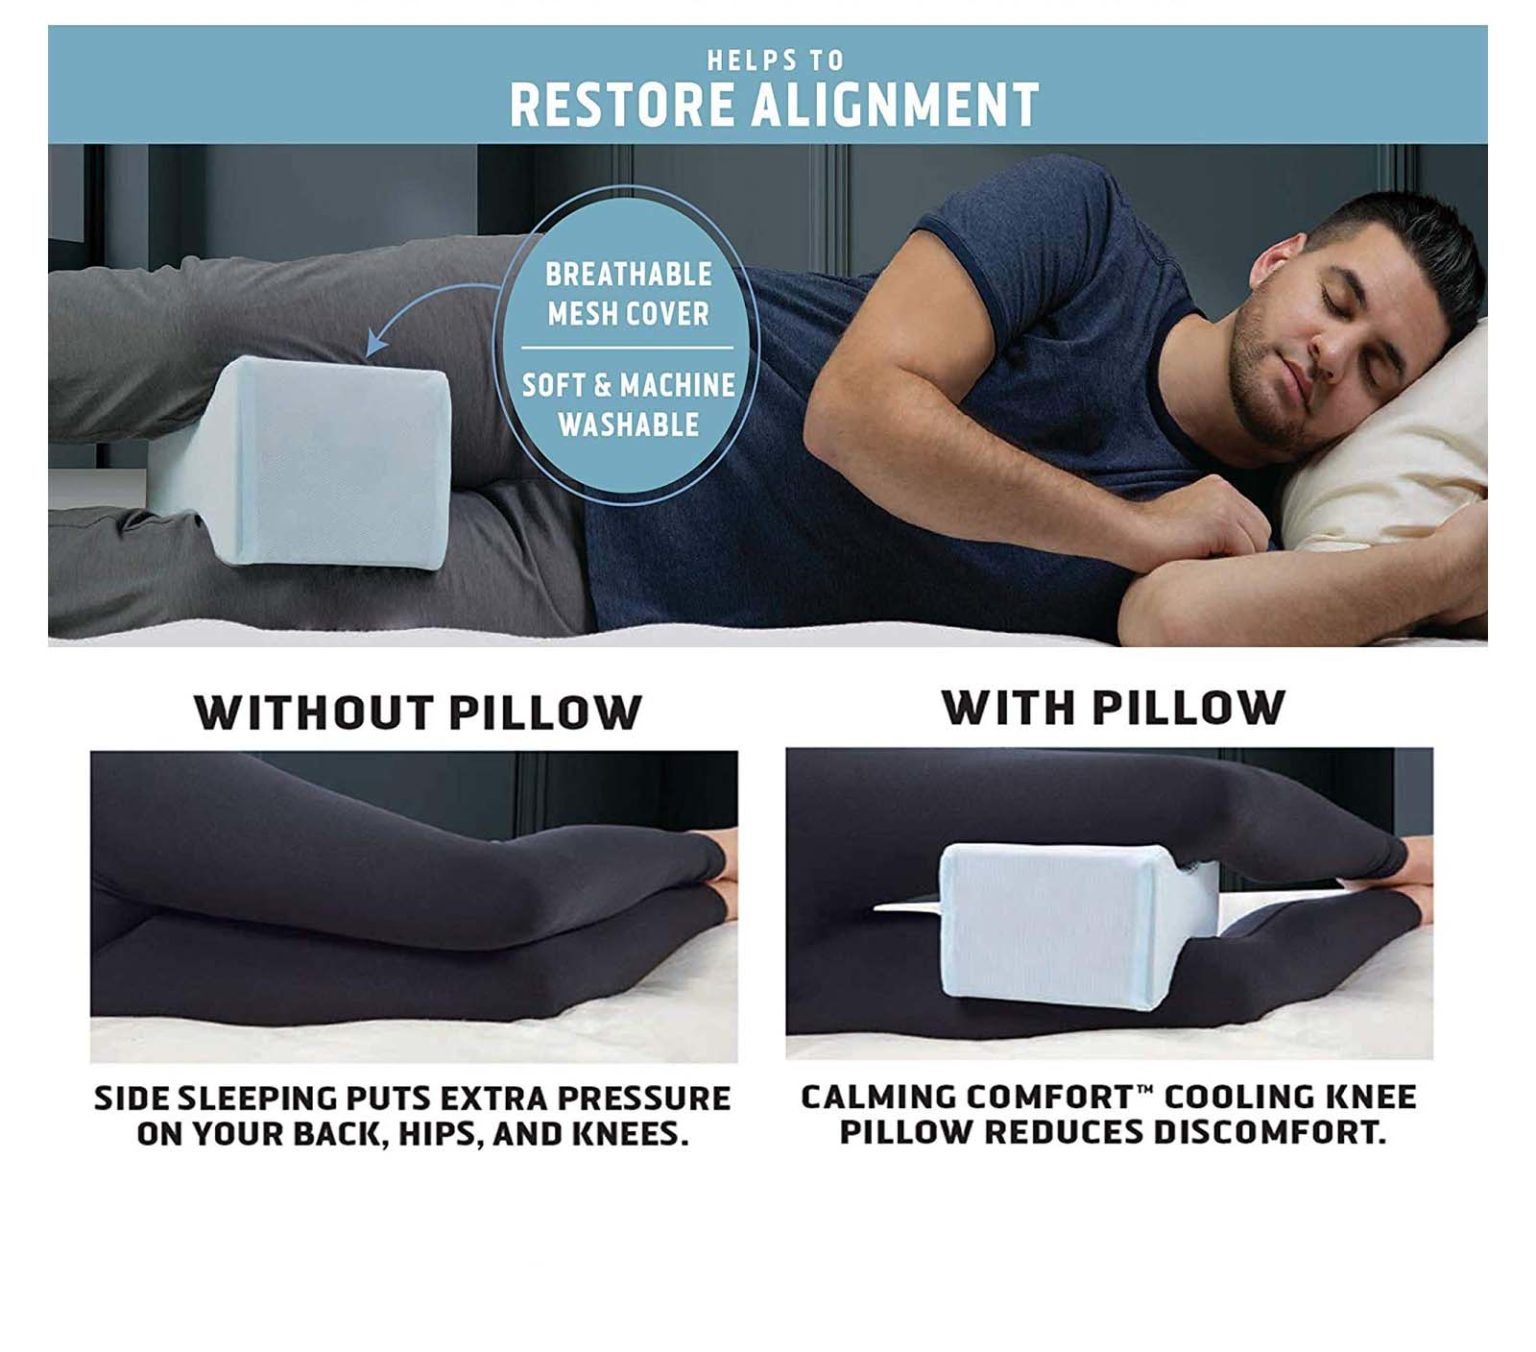 cooling spine align leg pillow